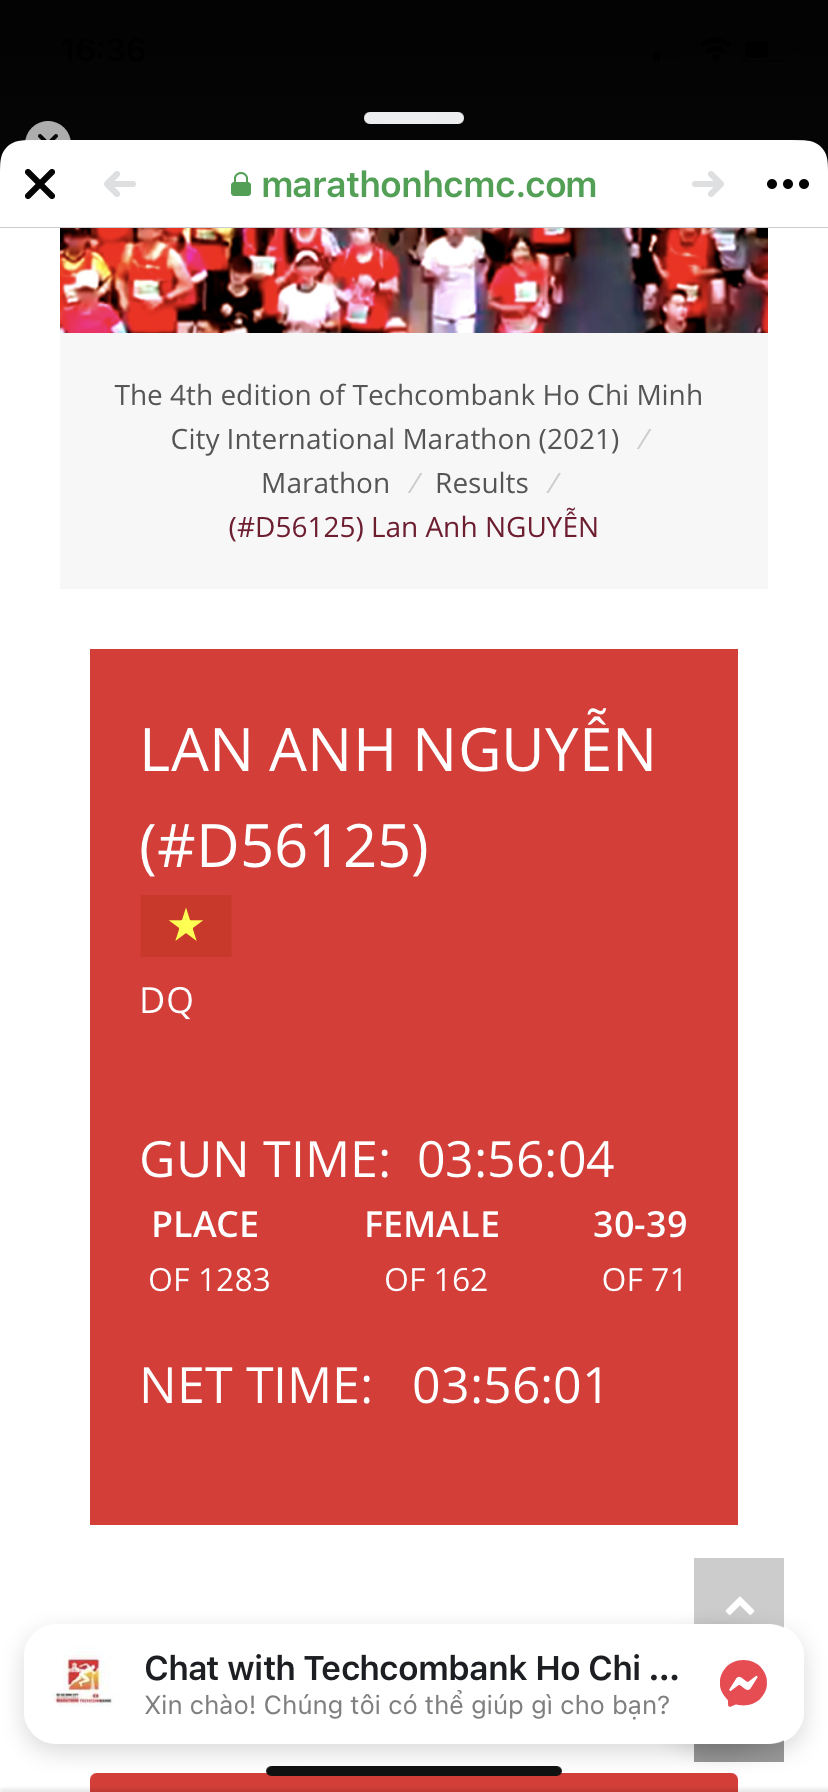 Ảnh: Thành tích của vận động viên nữ Nguyễn Lan Anh đã được xác nhận “DQ” (không hoàn thành). Ảnh: Chụp lại từ màn hình ban tổ chức.